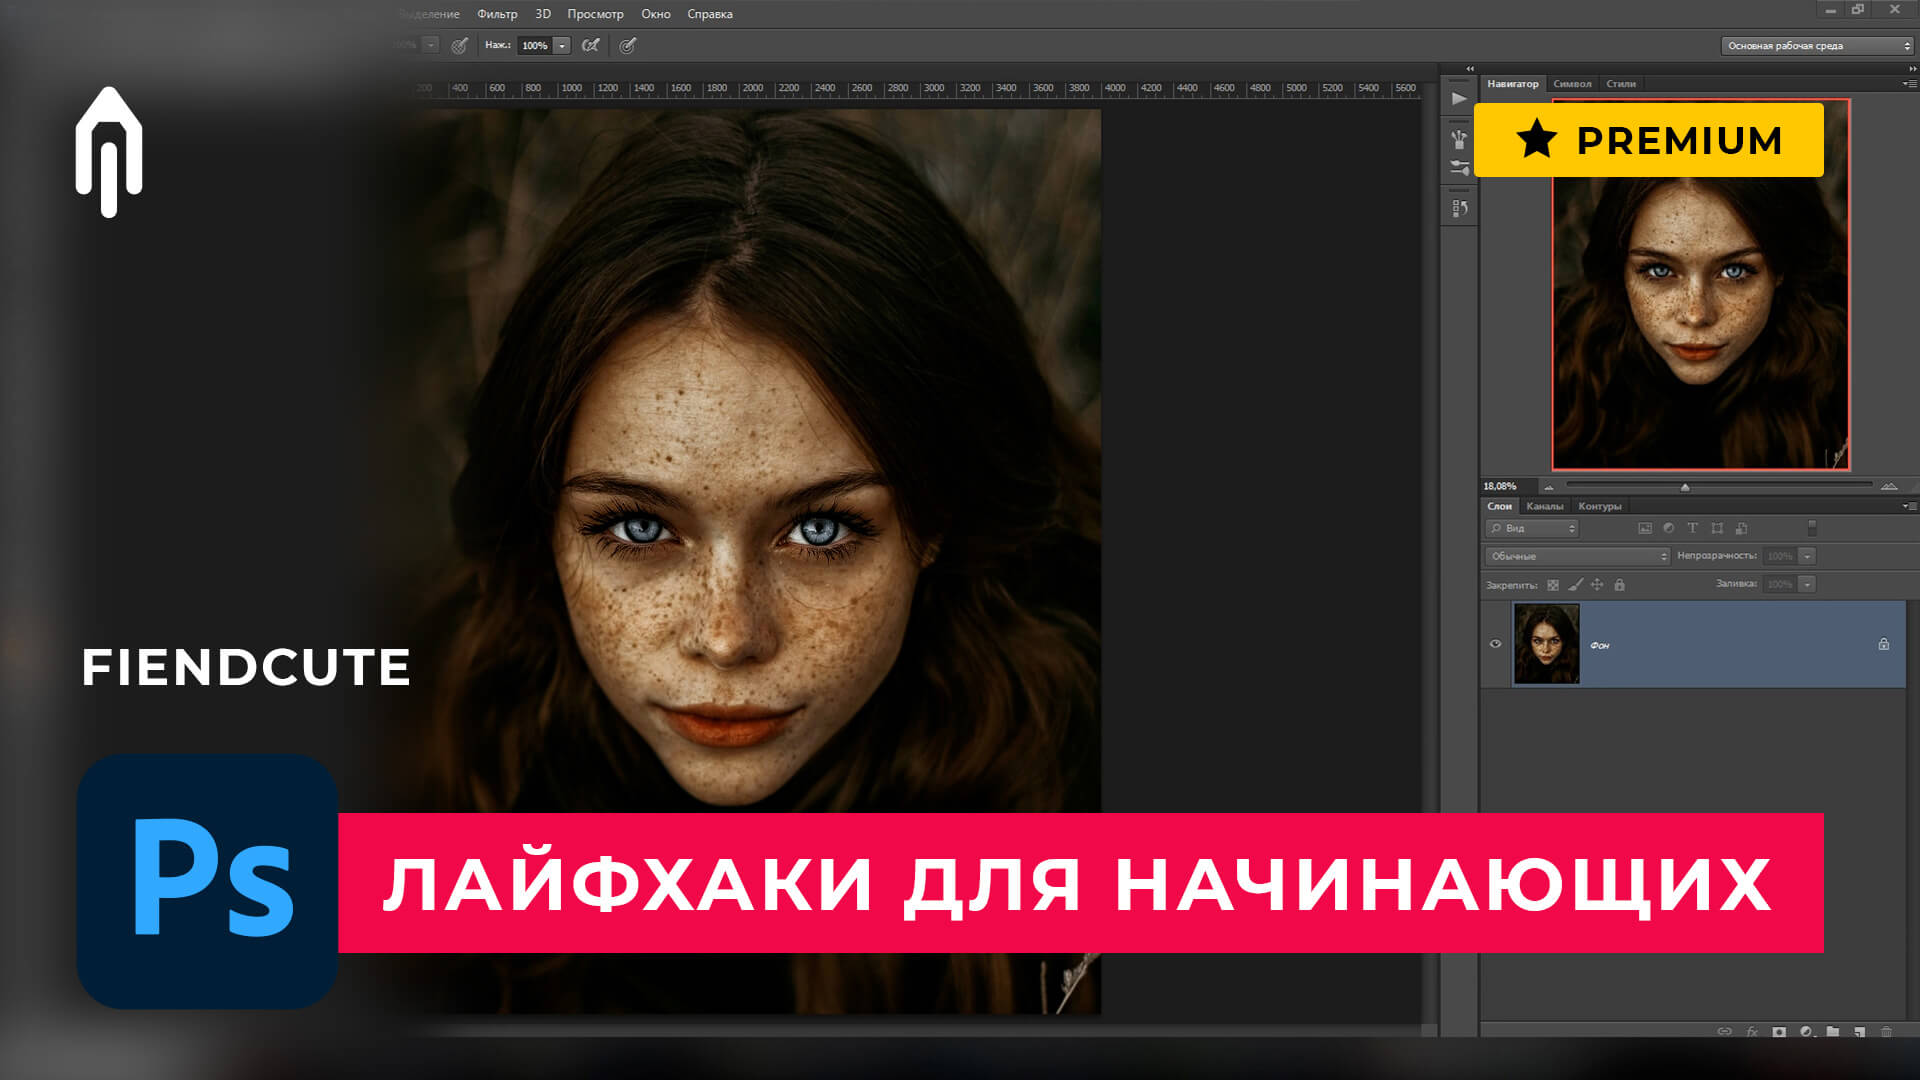 Фотошоп уроки курс. Уроки по фотошопу для начинающих. Работа в фотошопе для начинающих на русском языке. Уроки фотошопа для начинающих. Уроки Photoshop для начинающих курс.